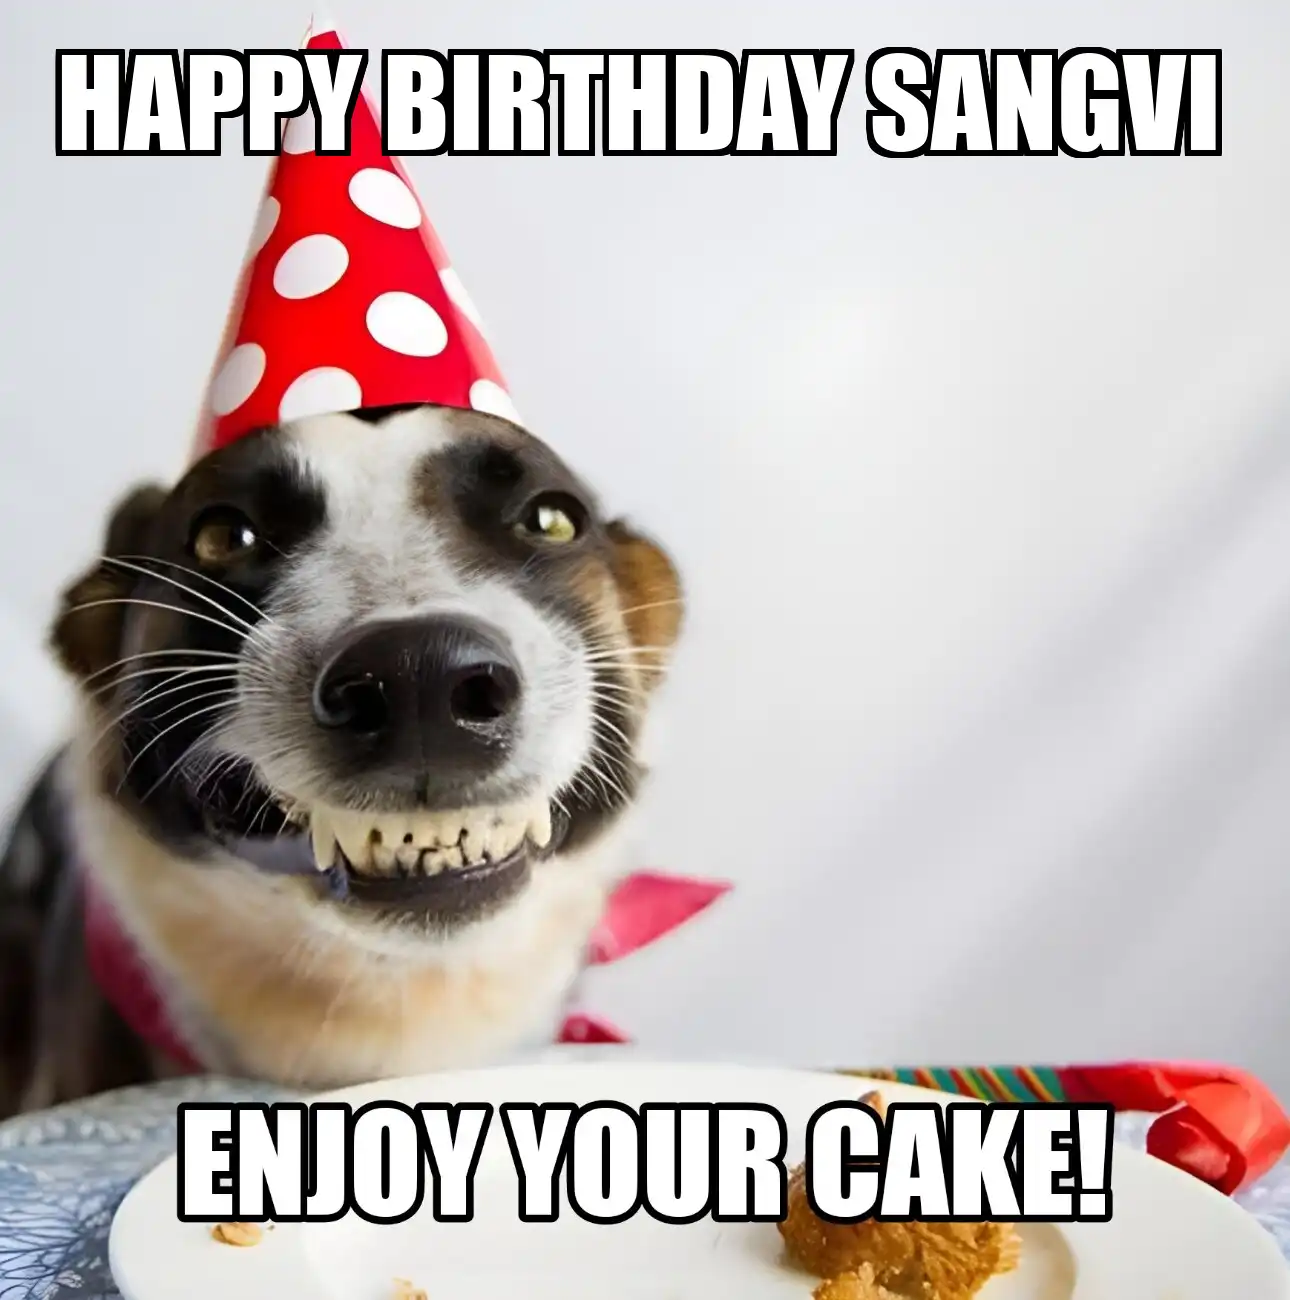 Happy Birthday Sangvi Enjoy Your Cake Dog Meme